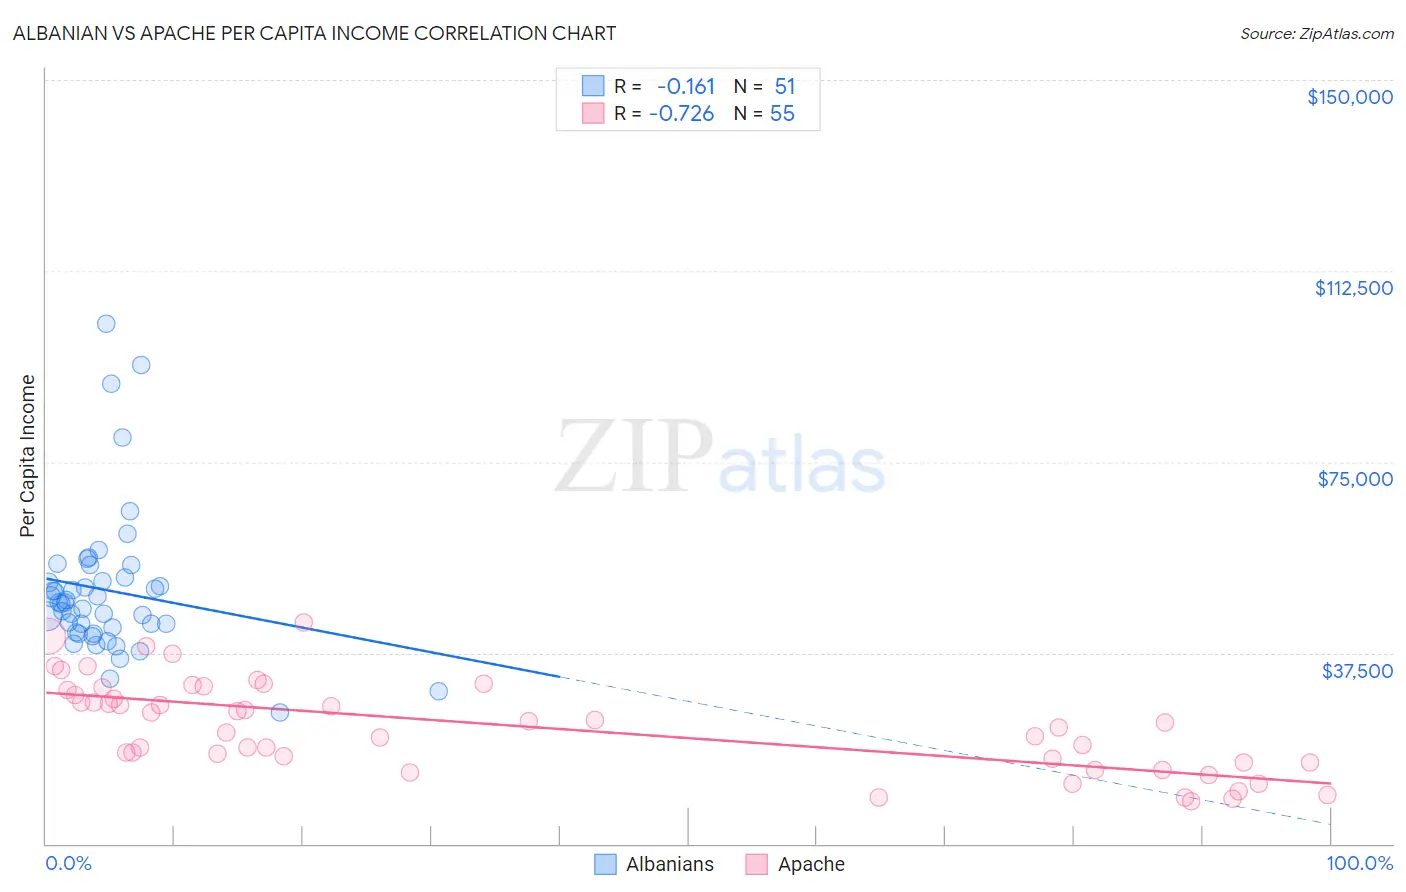 Albanian vs Apache Per Capita Income